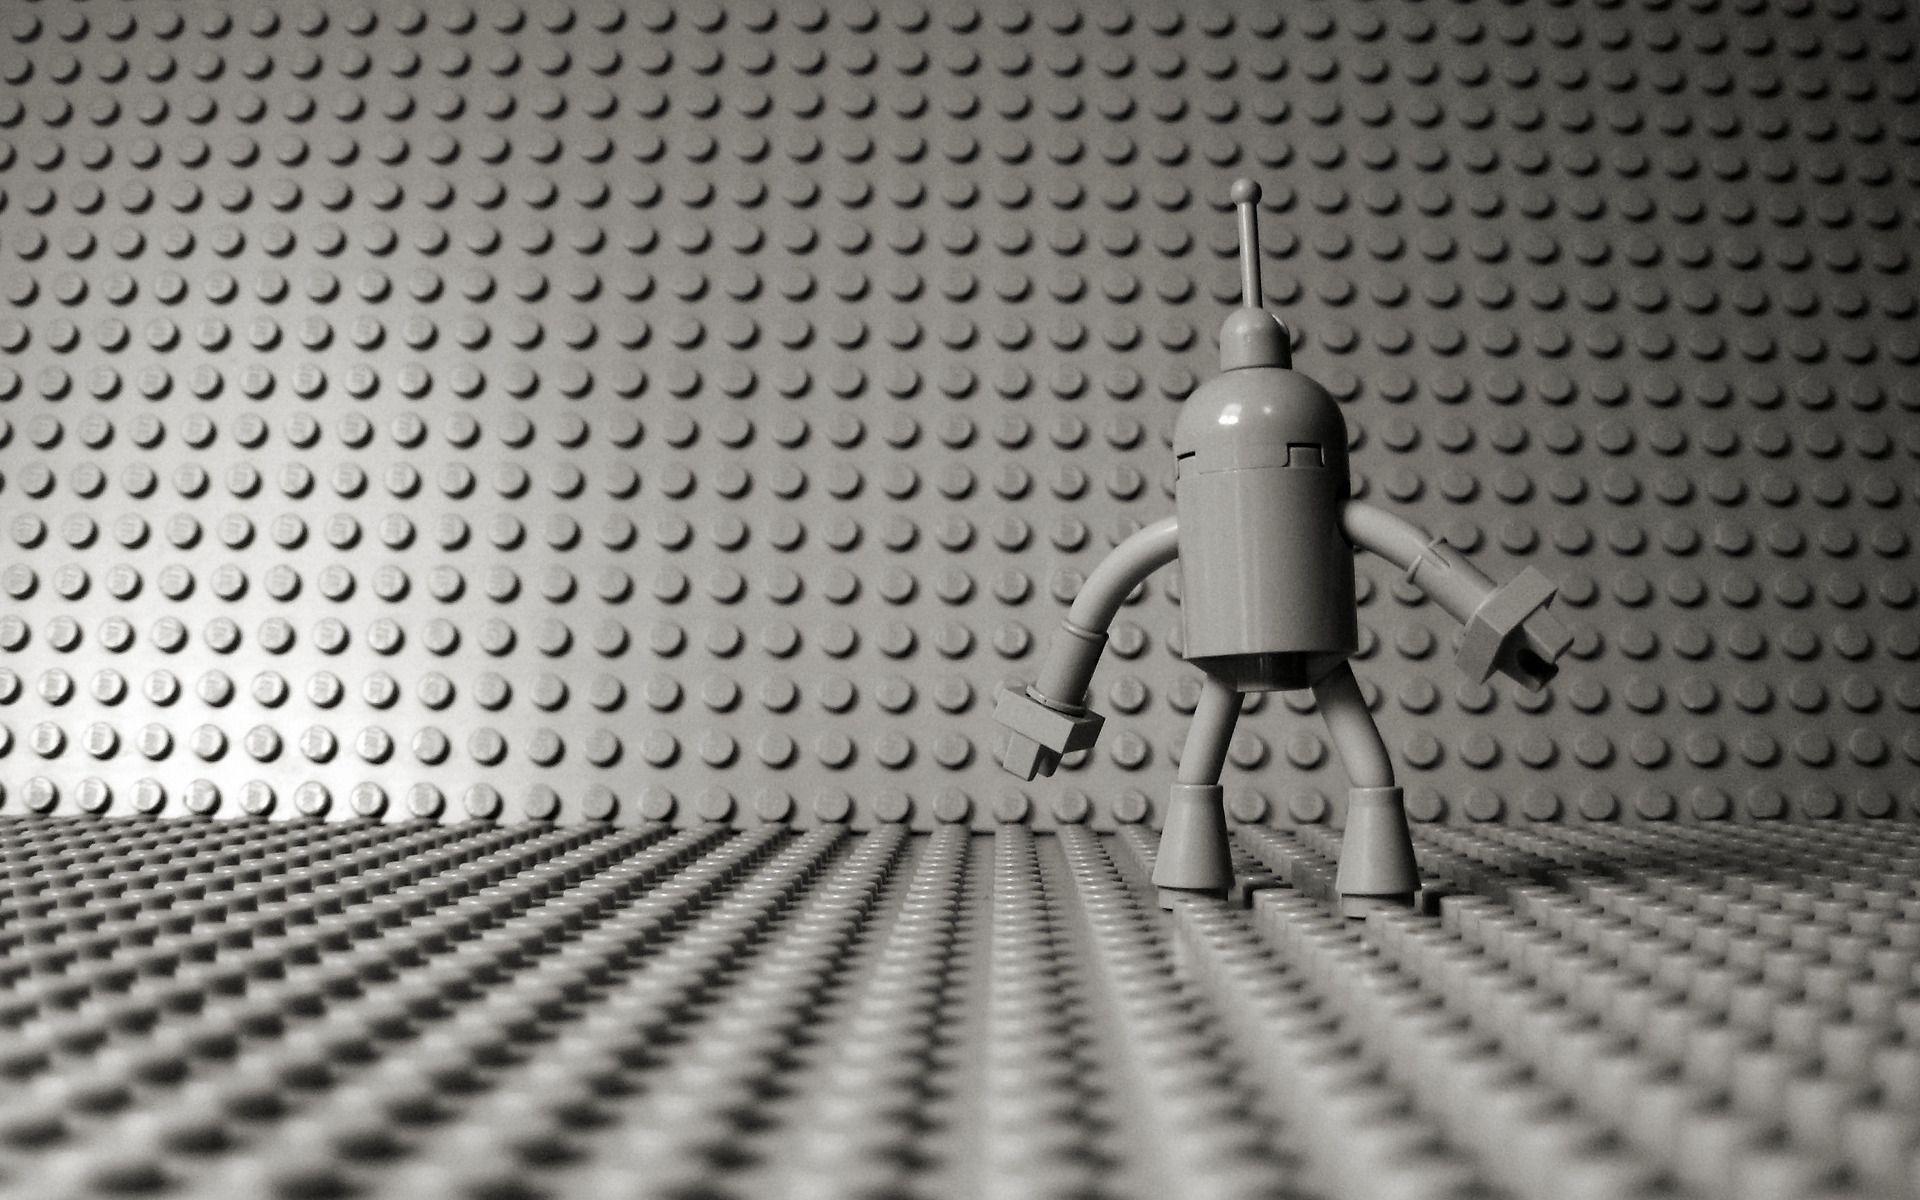 lego robotics wallpaper